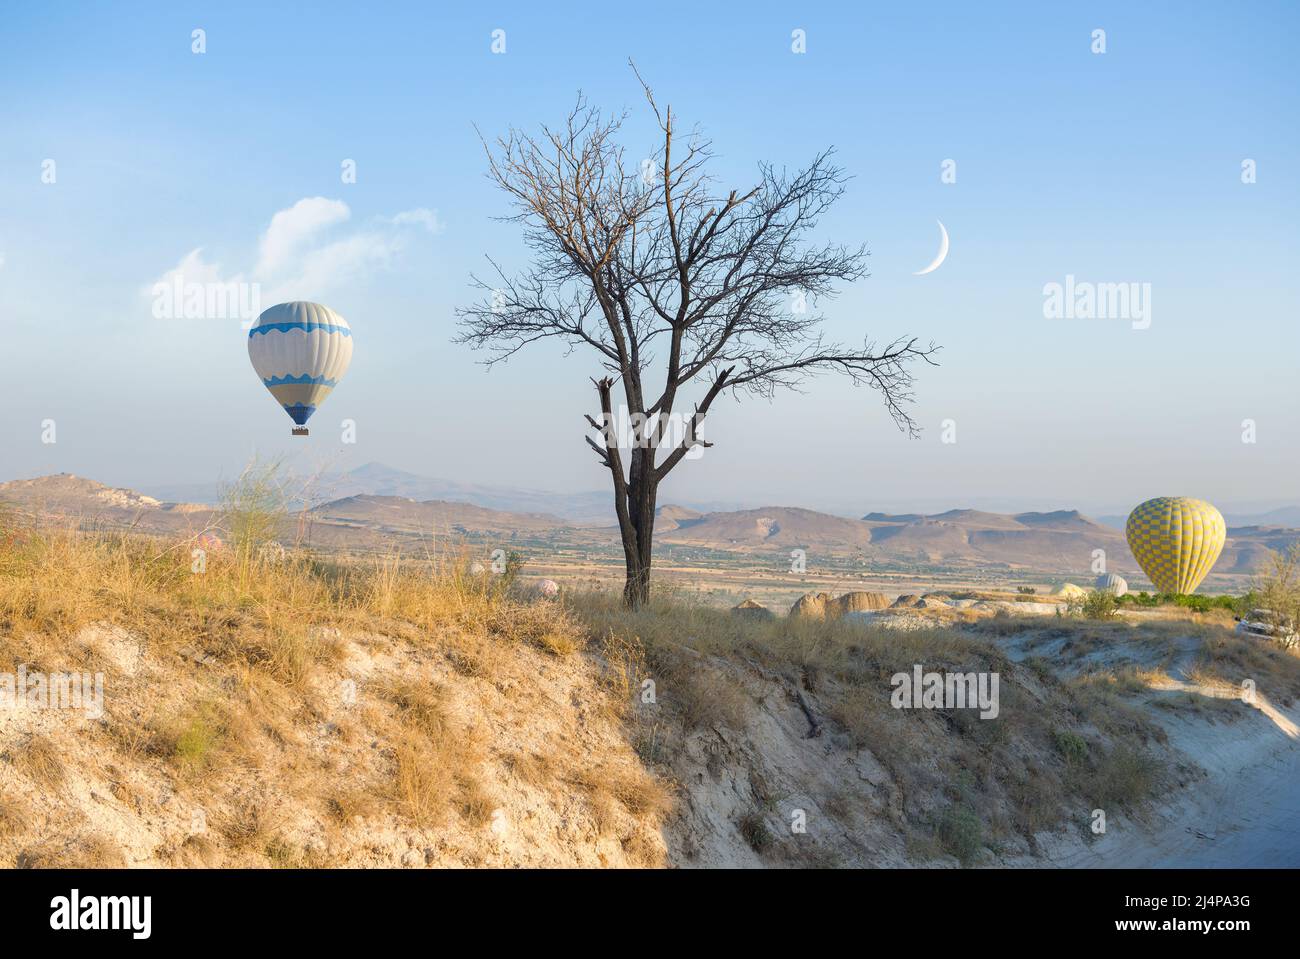 Hot air balloons landing over Cappadocia, Turkey Stock Photo